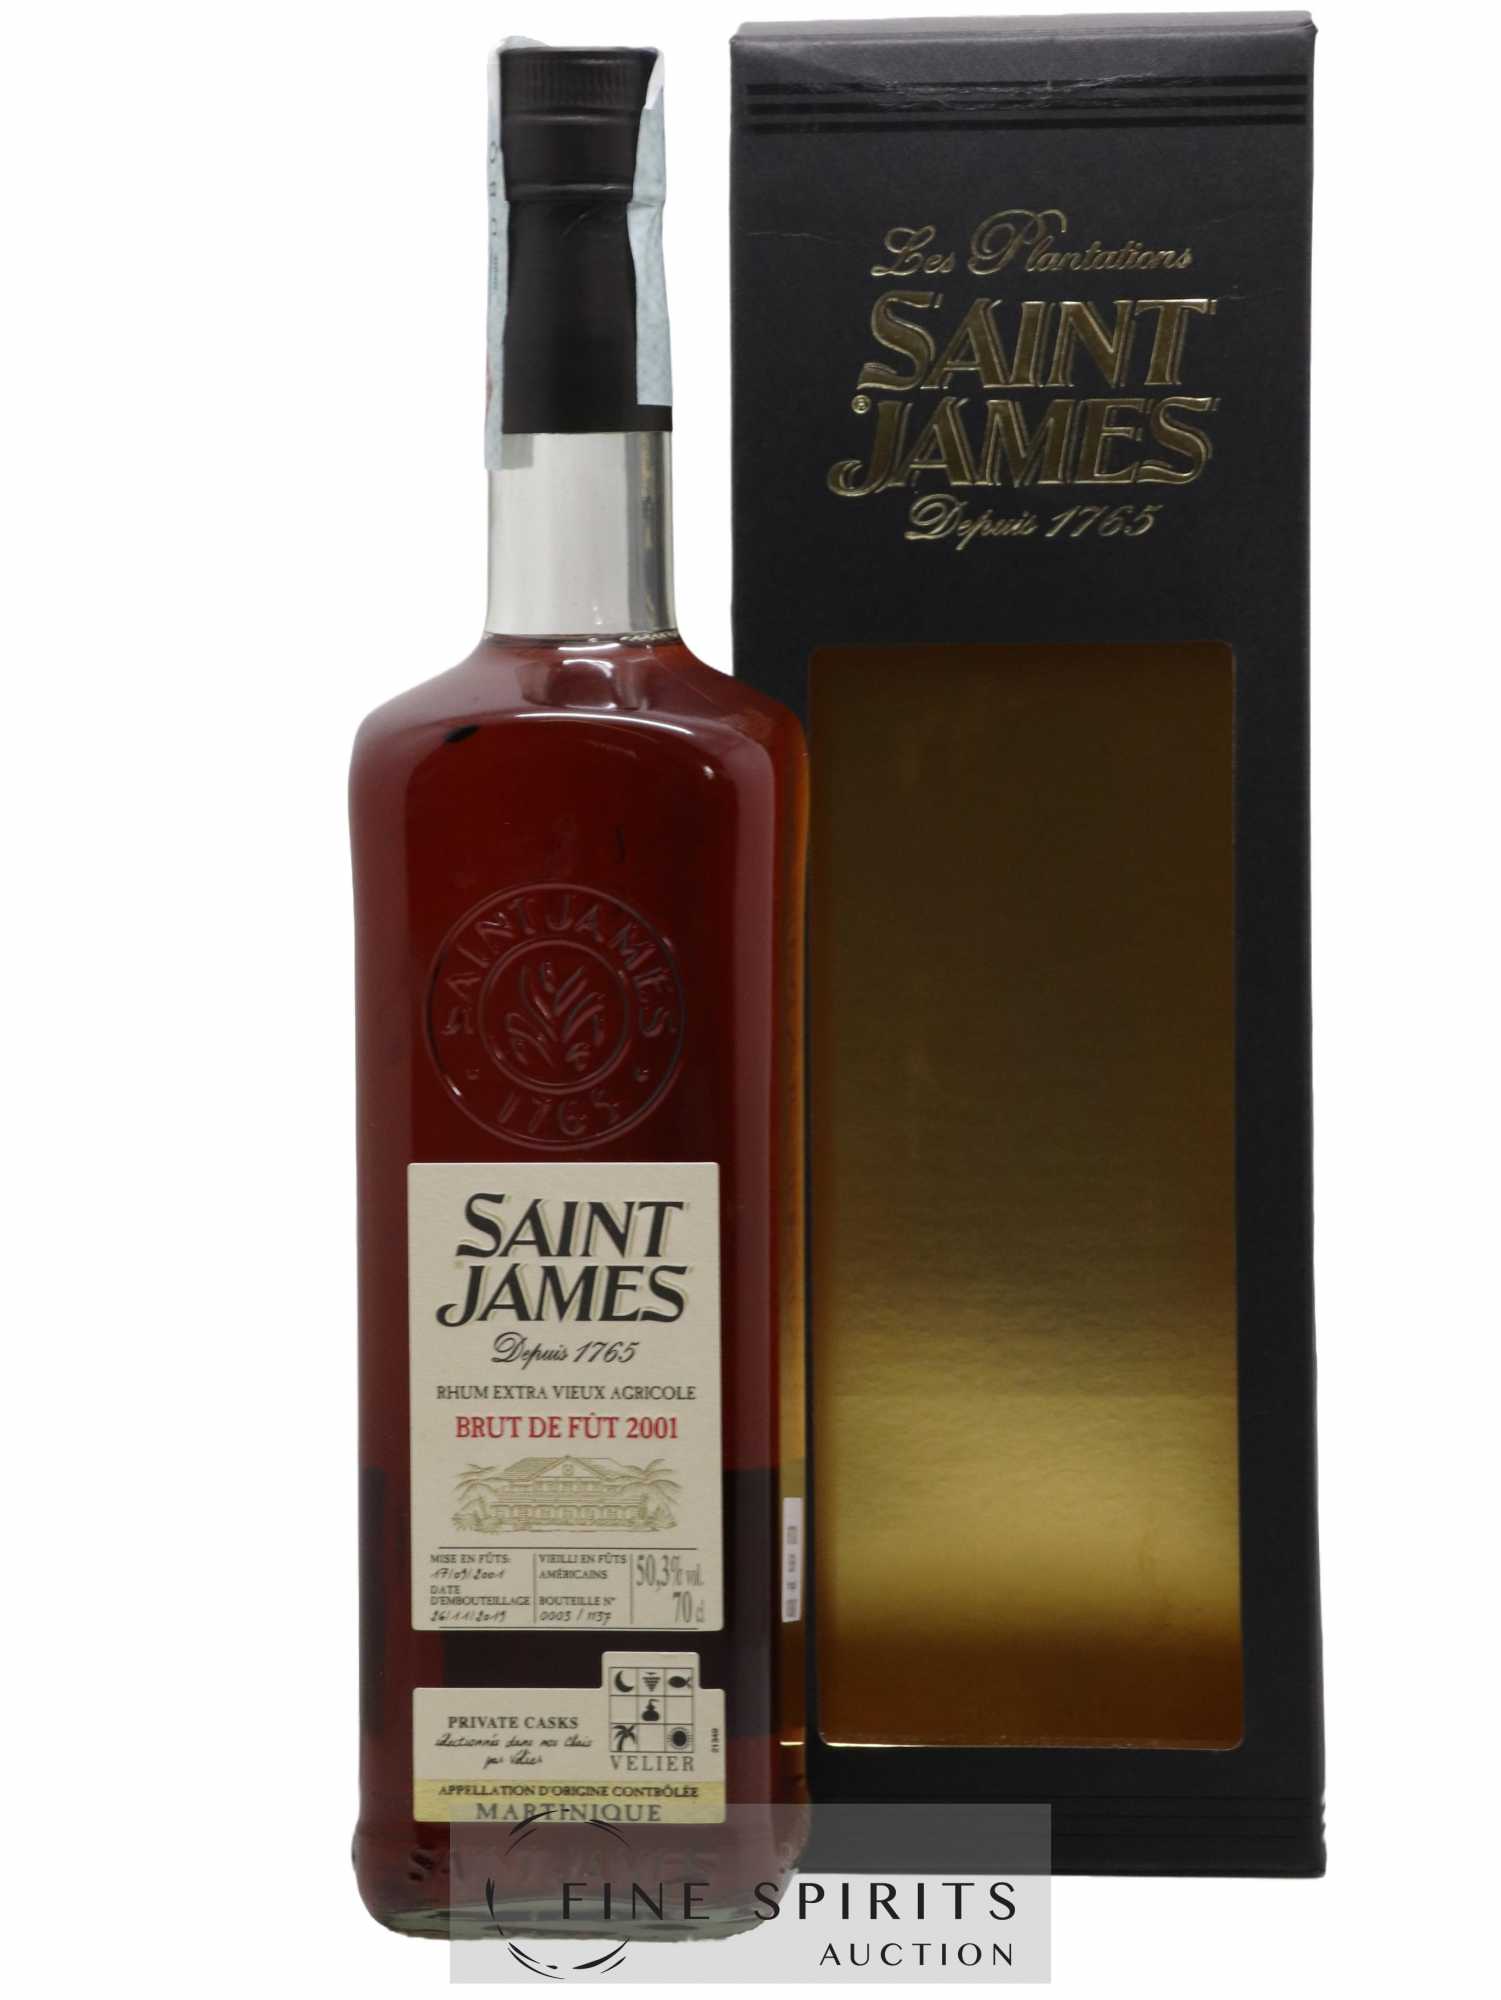 Saint James 2001 Of. One of 1137 - bottled 2019 Velier Brut de fût